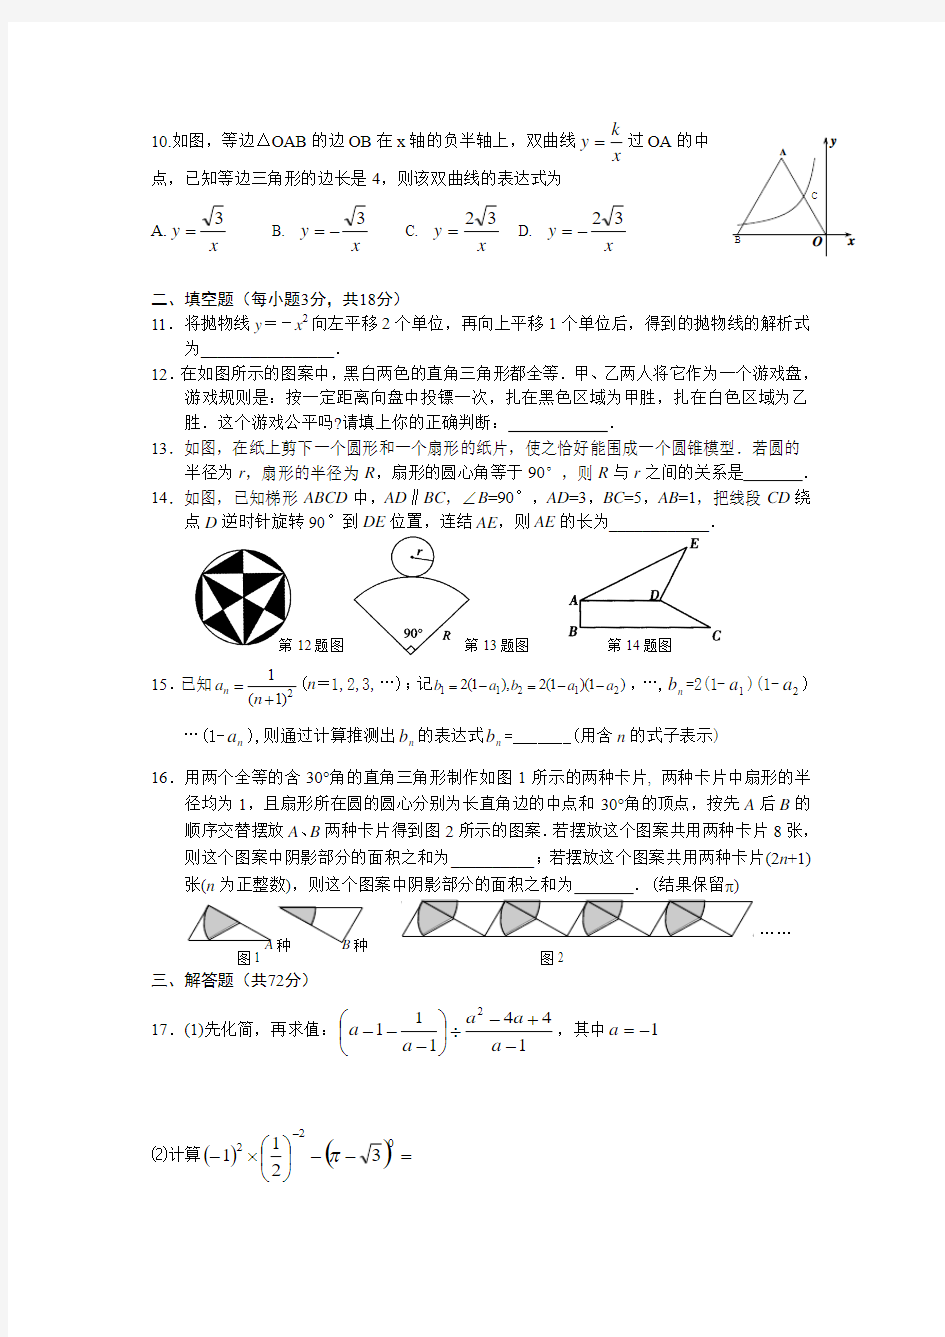 大冶三中数学考试(一) Word 文档 (7)